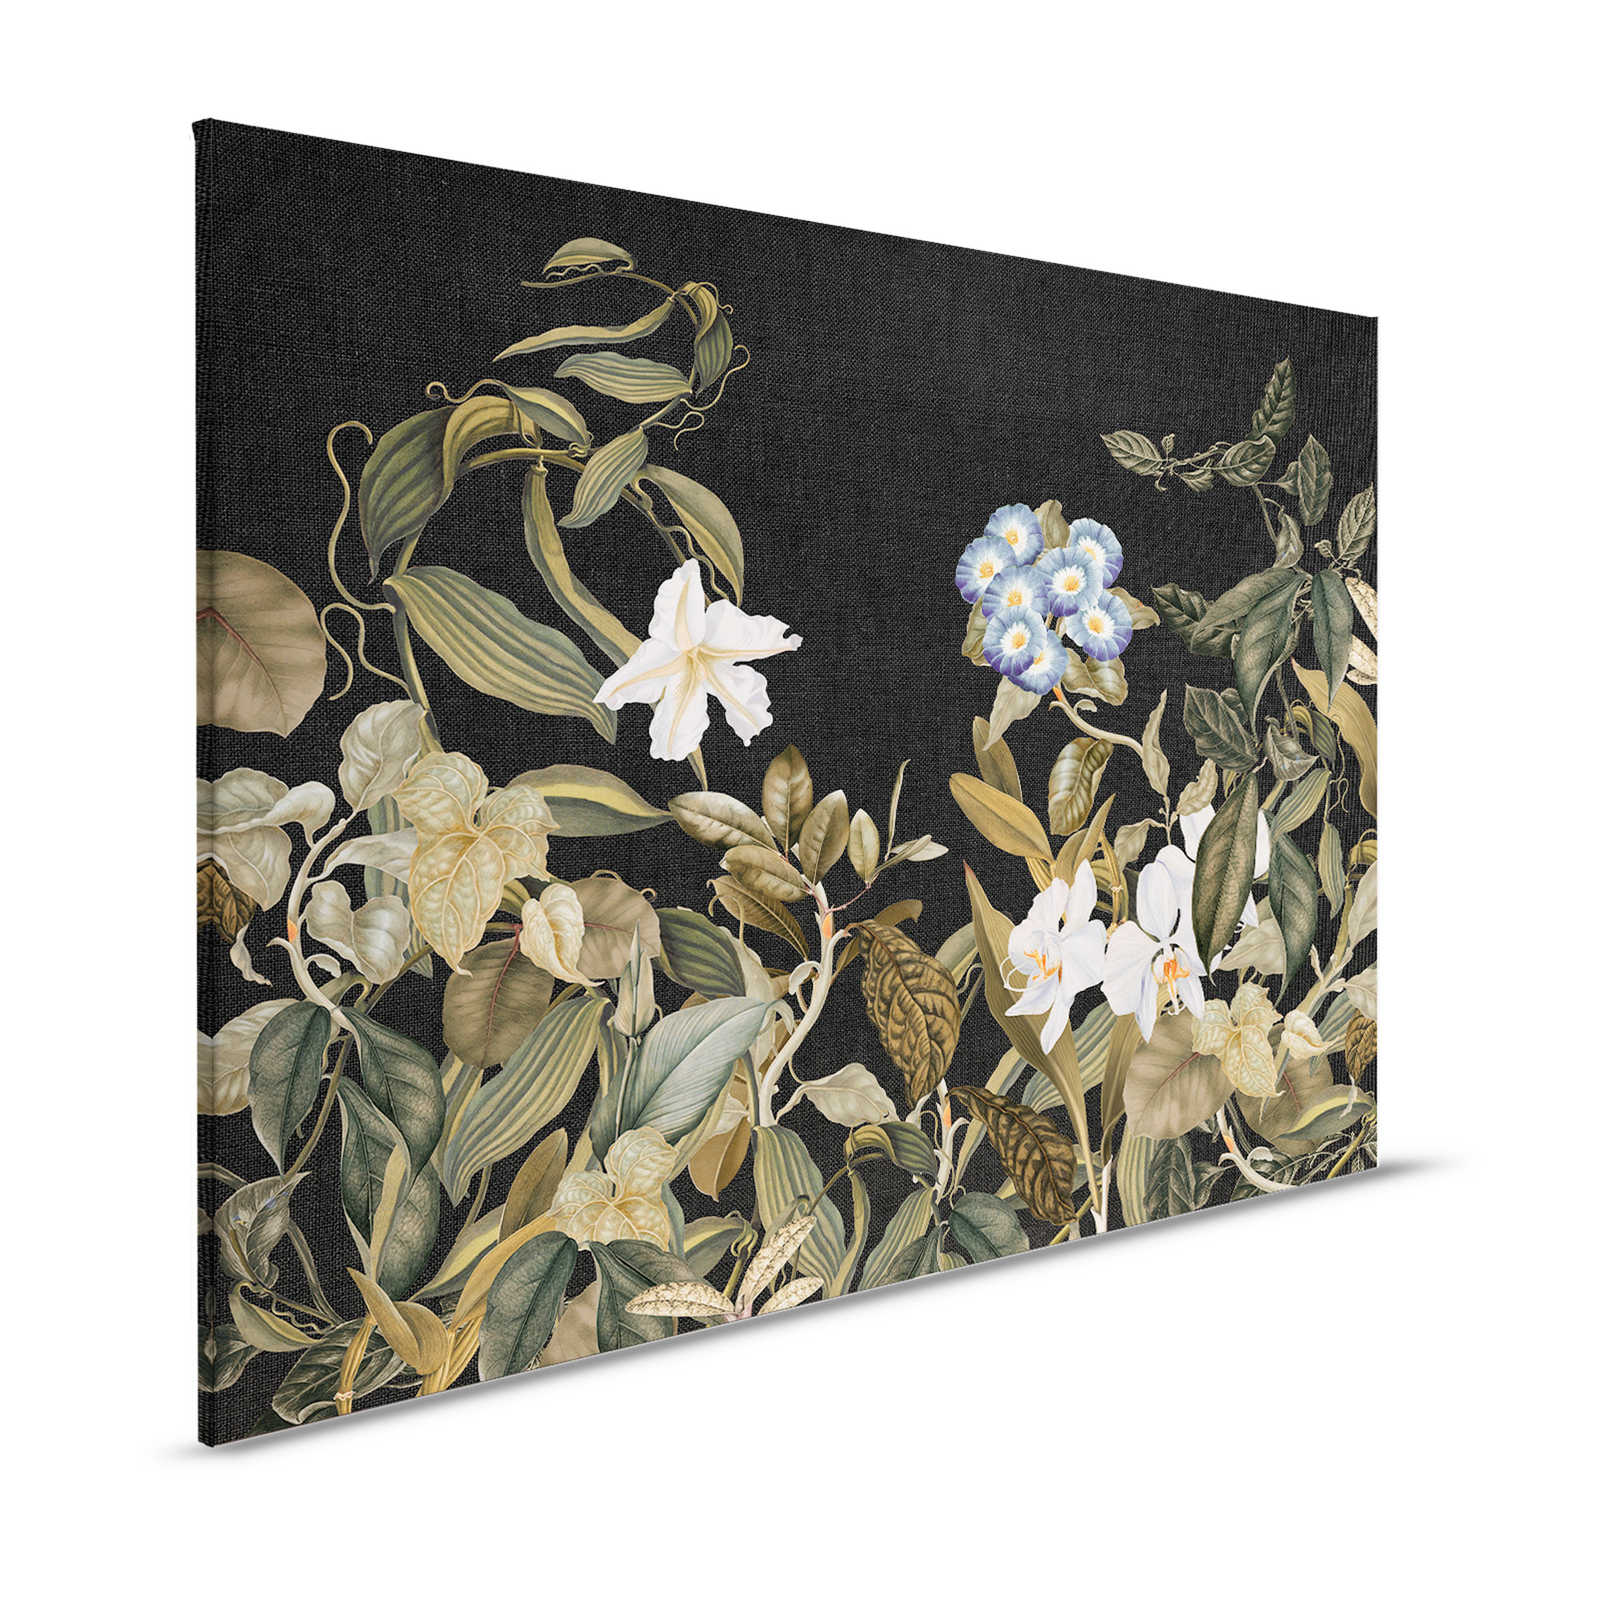 Botanisch Canvas Schilderij met Orchideeën & Bladeren Motief - 1.20 m x 0.80 m
